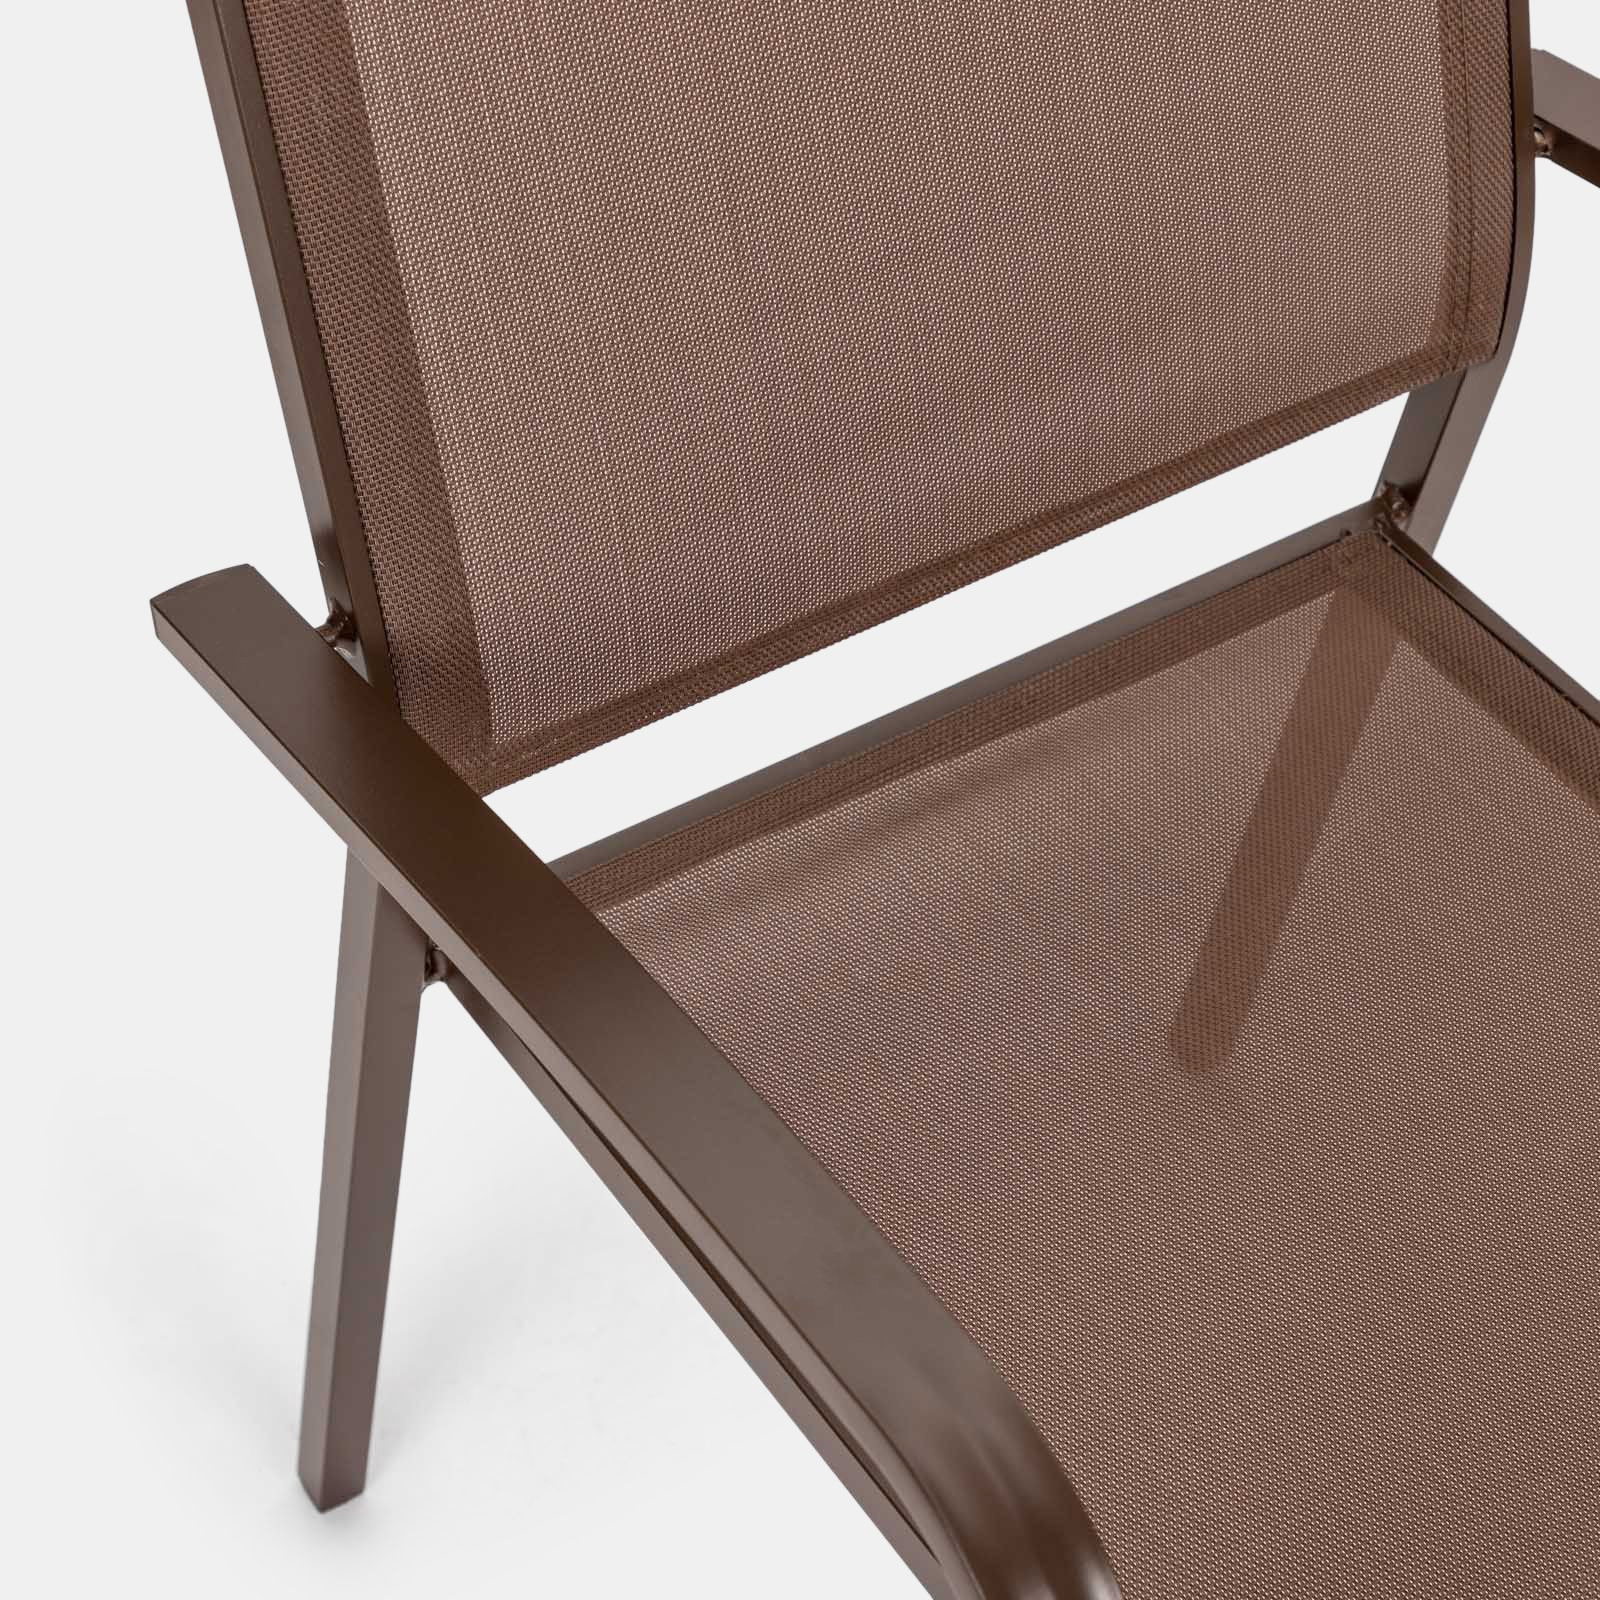 EVOL in alluminio e legno sedia con braccioli impilabile per bar